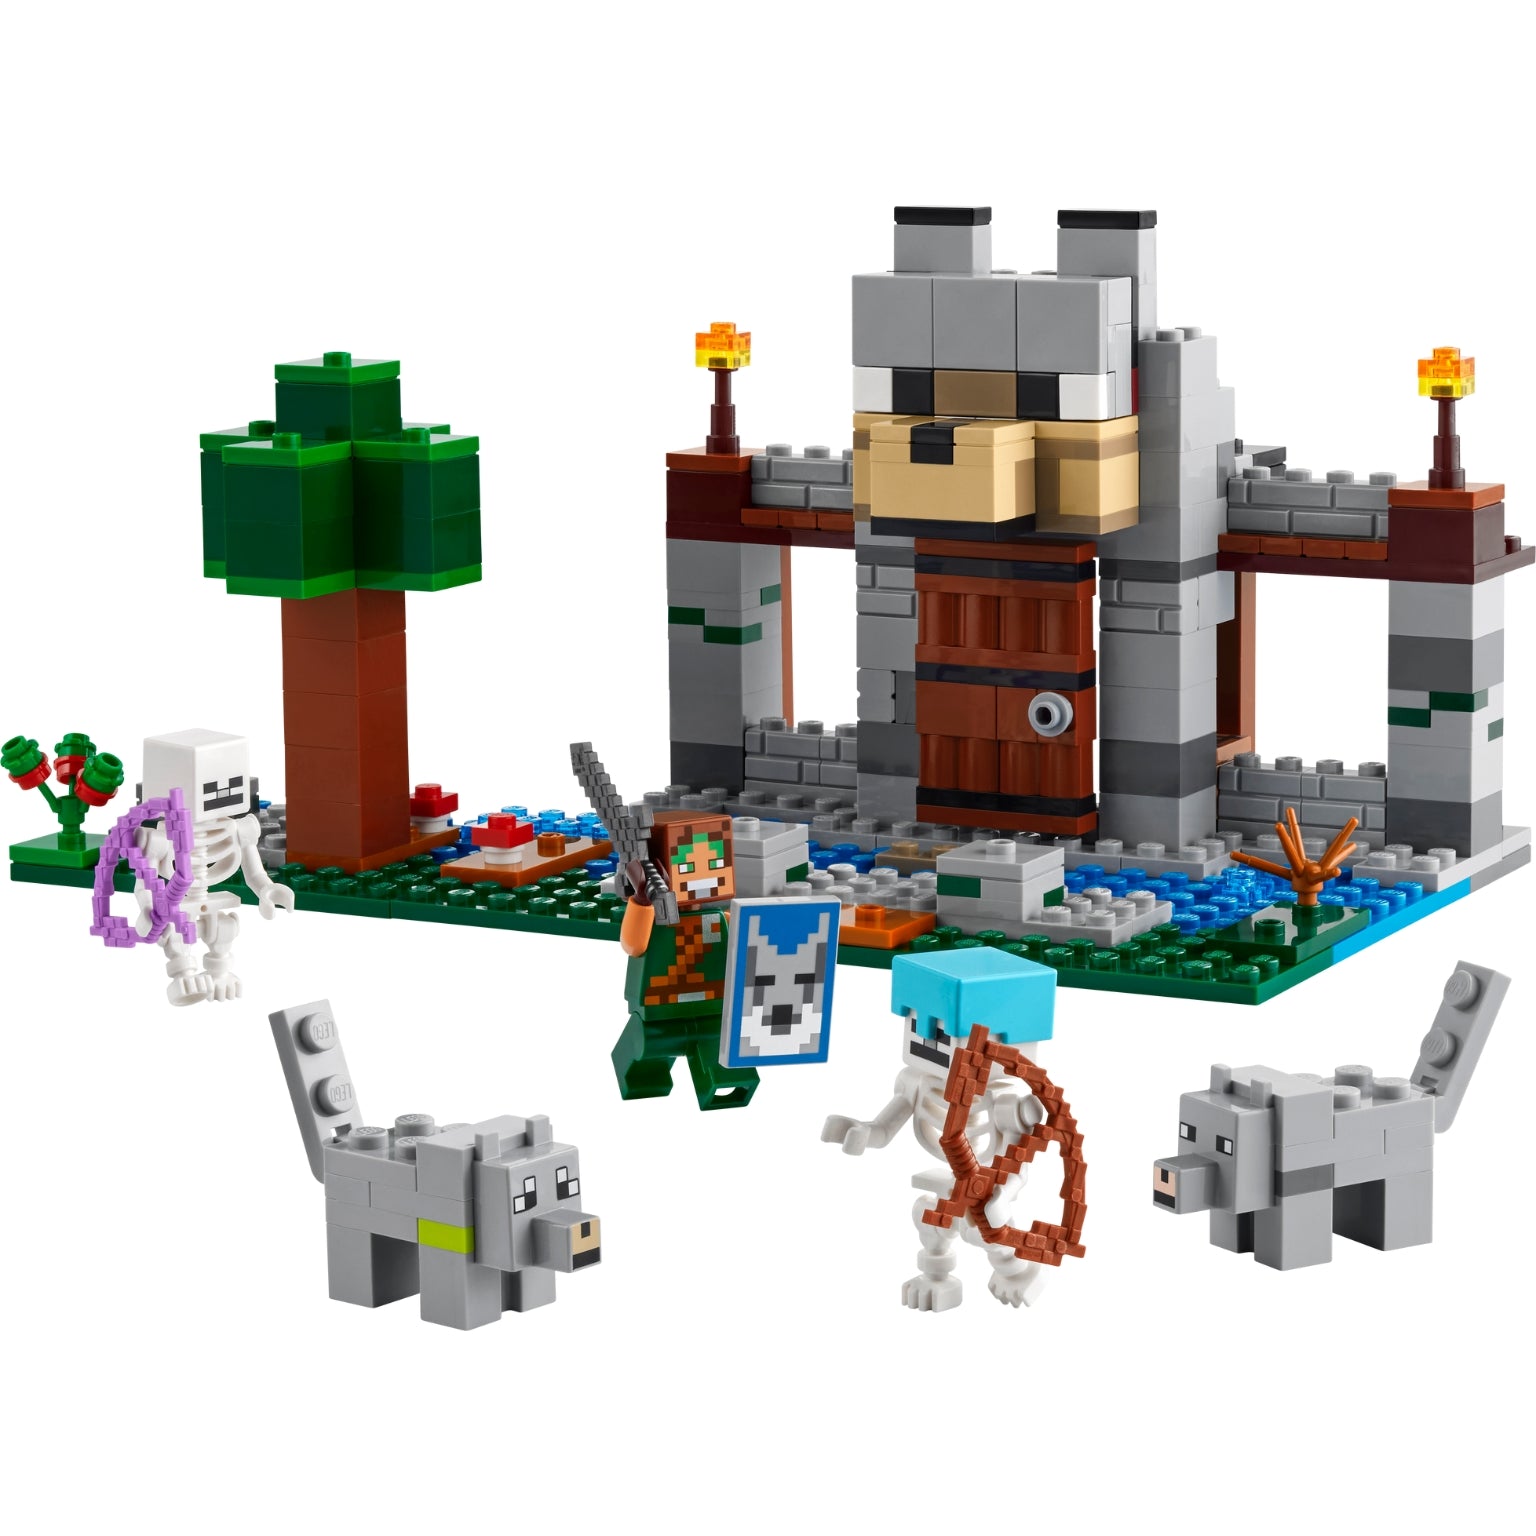 Lego Minecraft 21261 - A Fortaleza dos Lobos